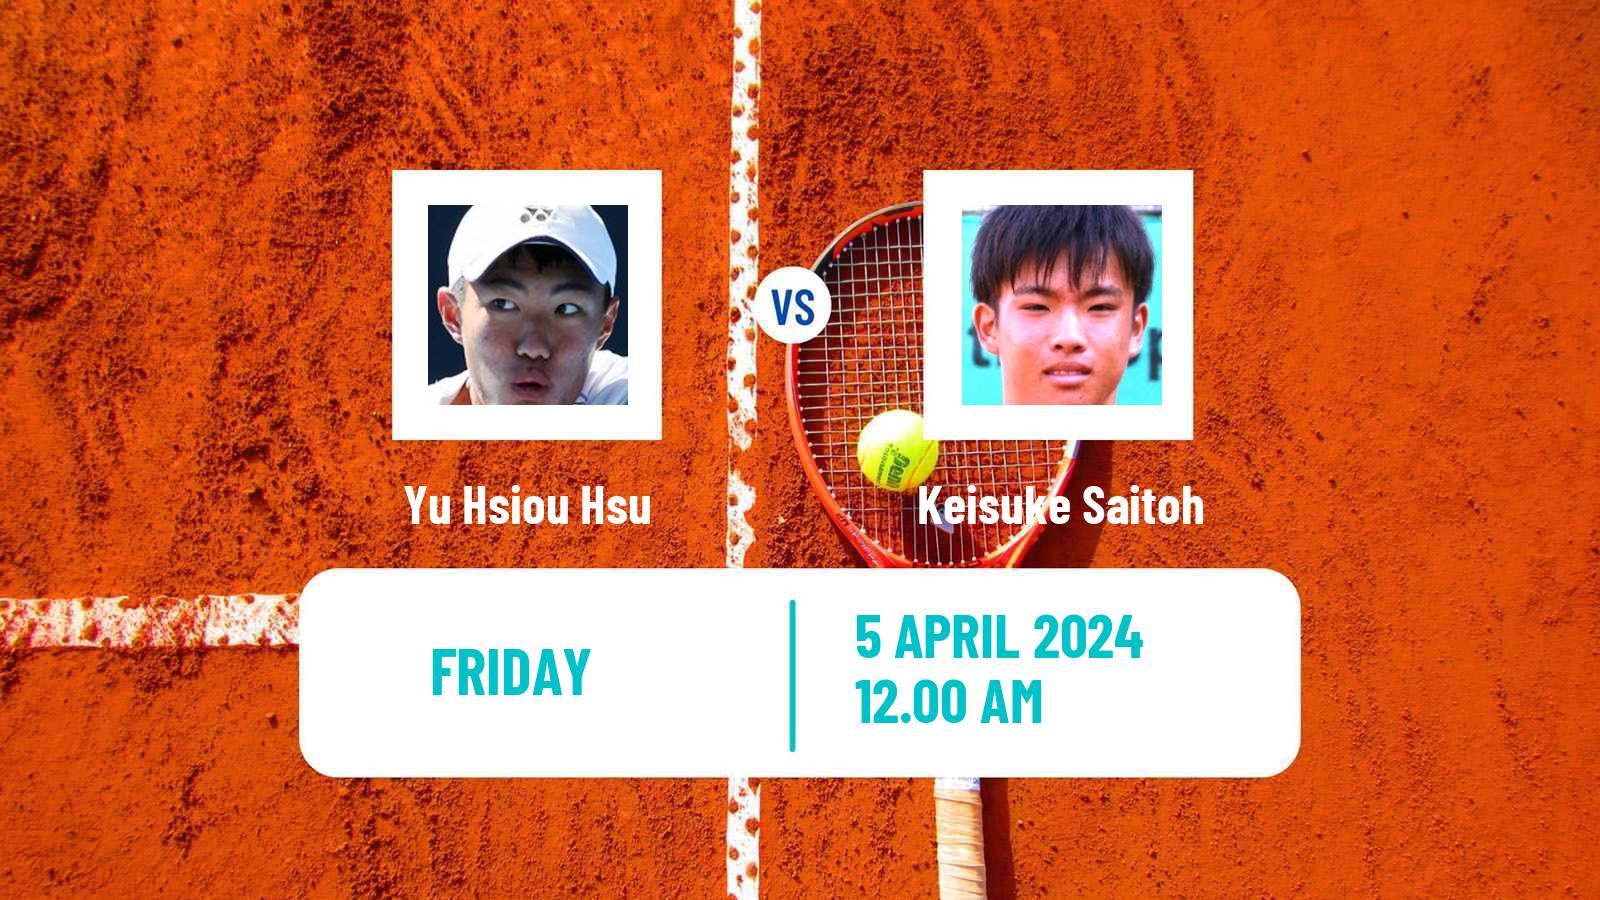 Tennis ITF M15 Kashiwa Men Yu Hsiou Hsu - Keisuke Saitoh